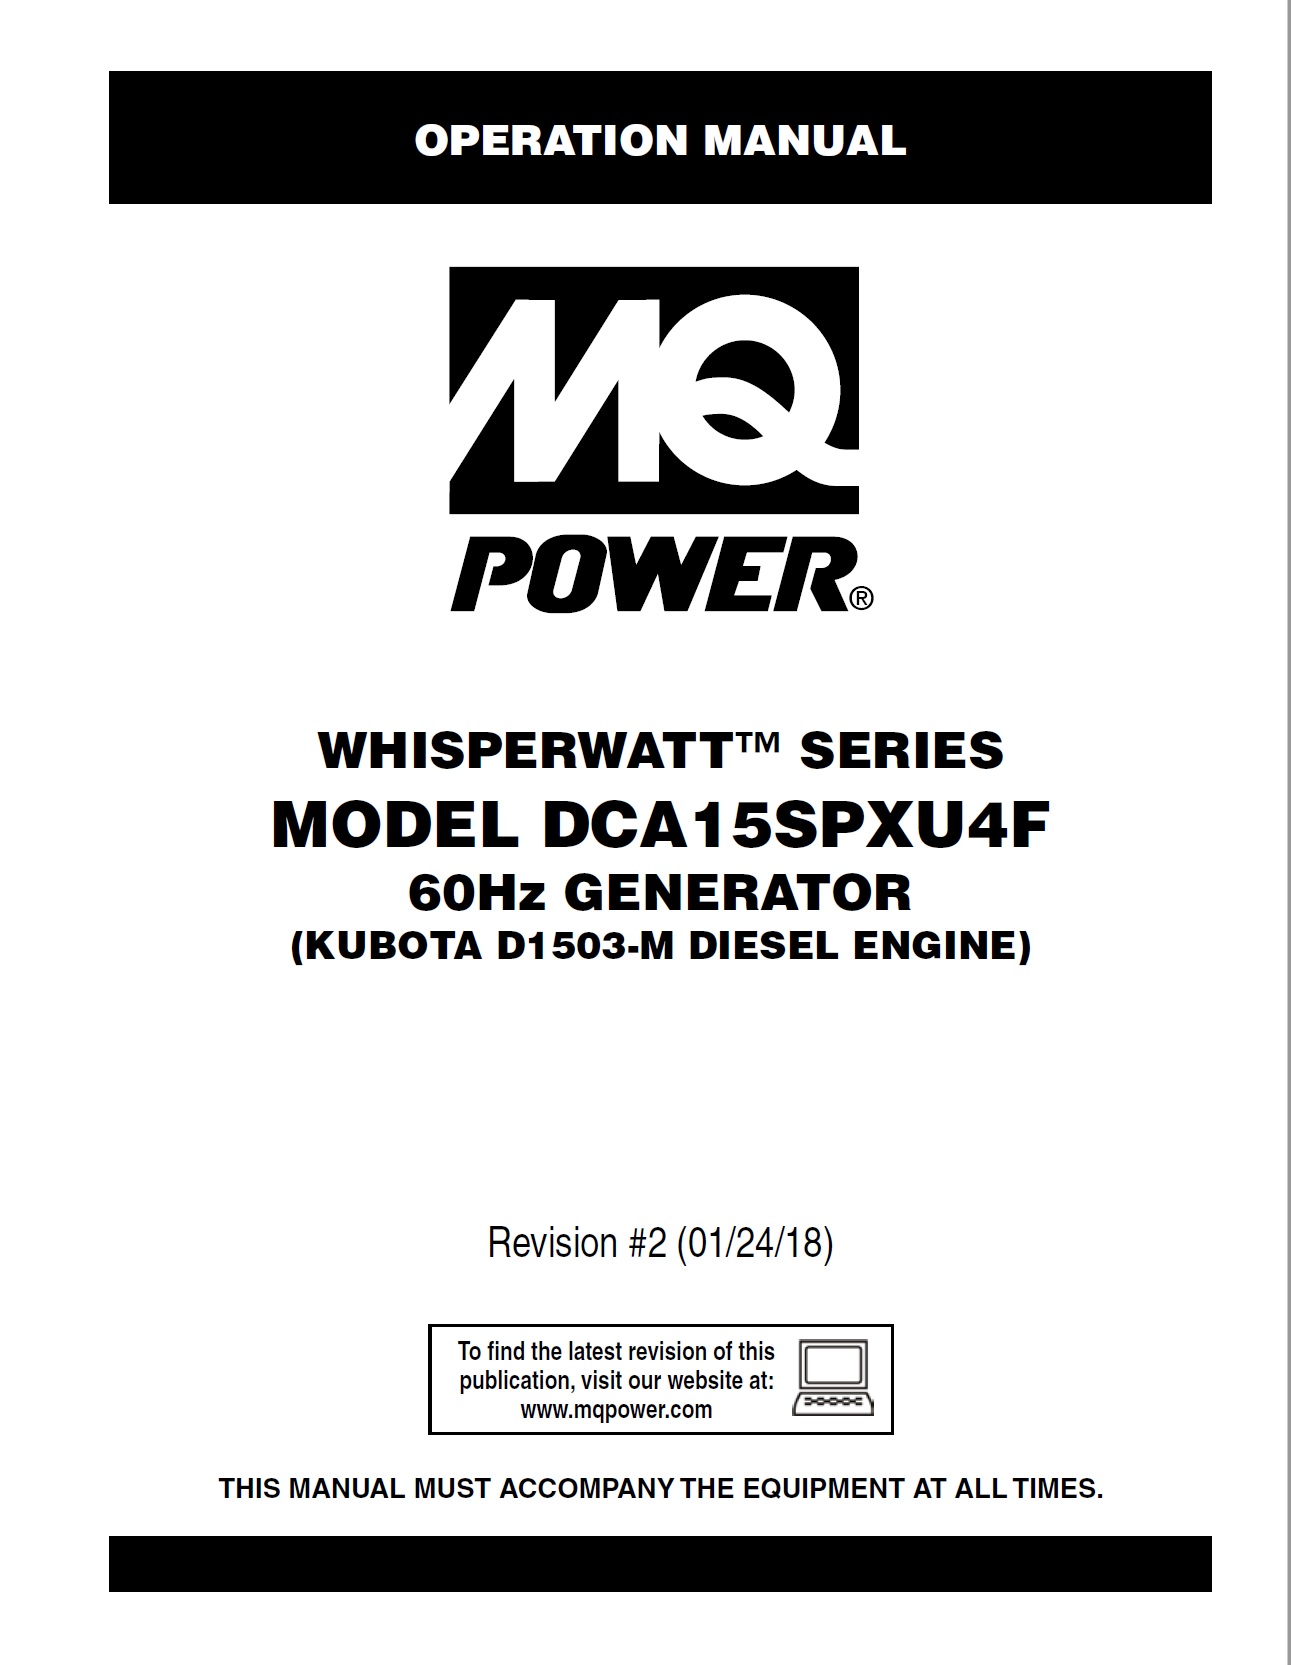 Generators-portable-whisperwatt-DCA15SPXU4F-rev-2-op-manual